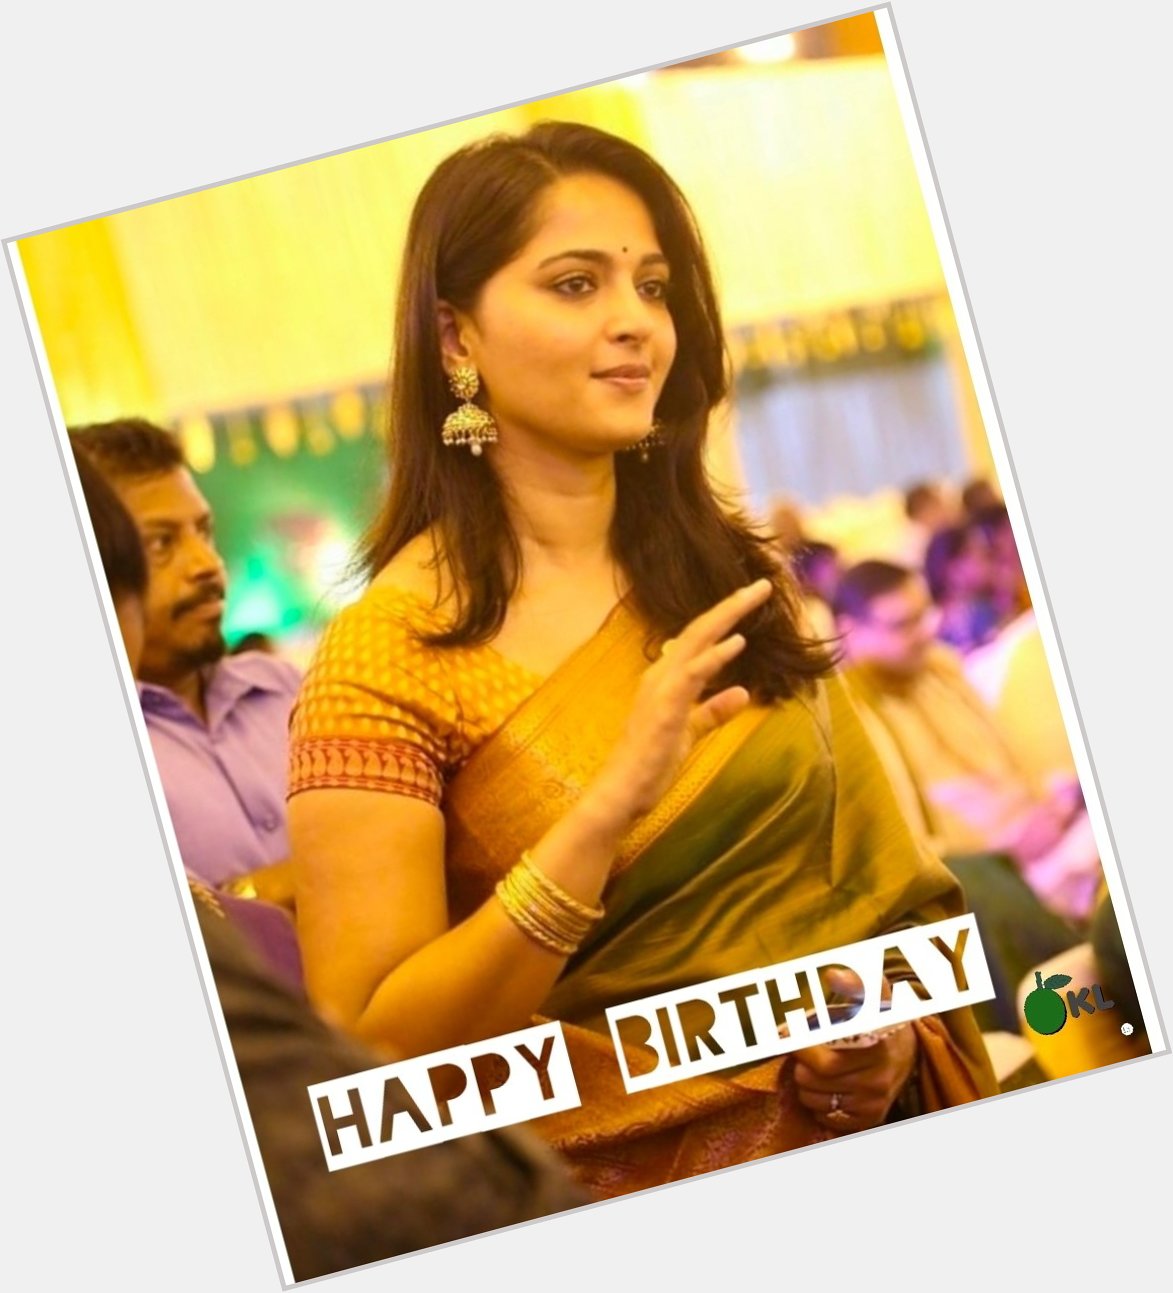 Happy Birthday Anushka Shetty     